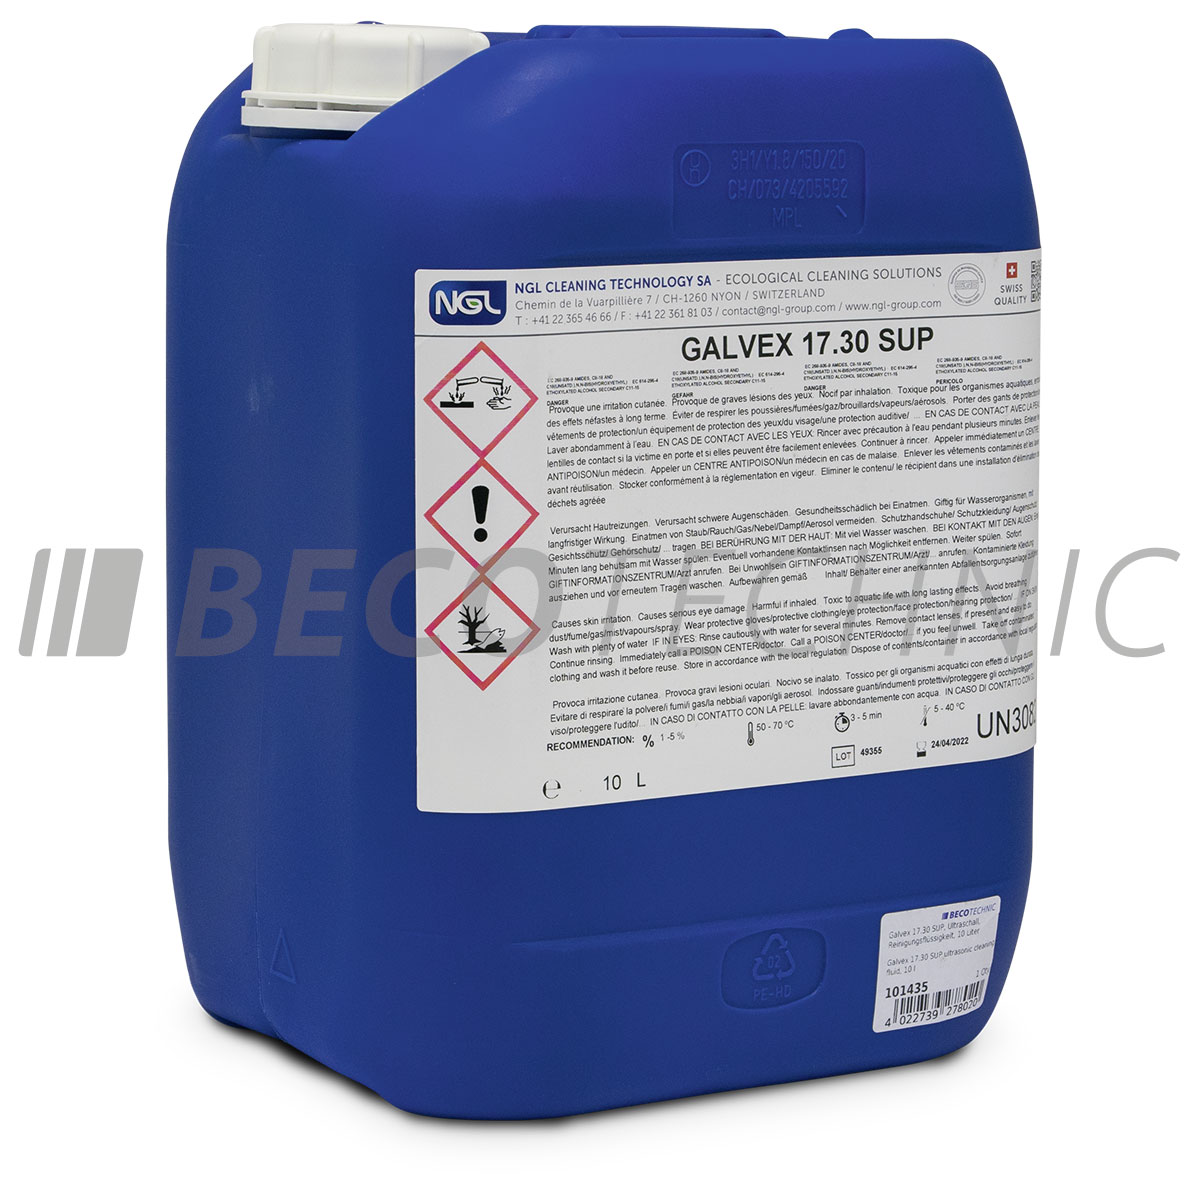 Galvex 17.30 SUP ultrason liquide, 10 litres